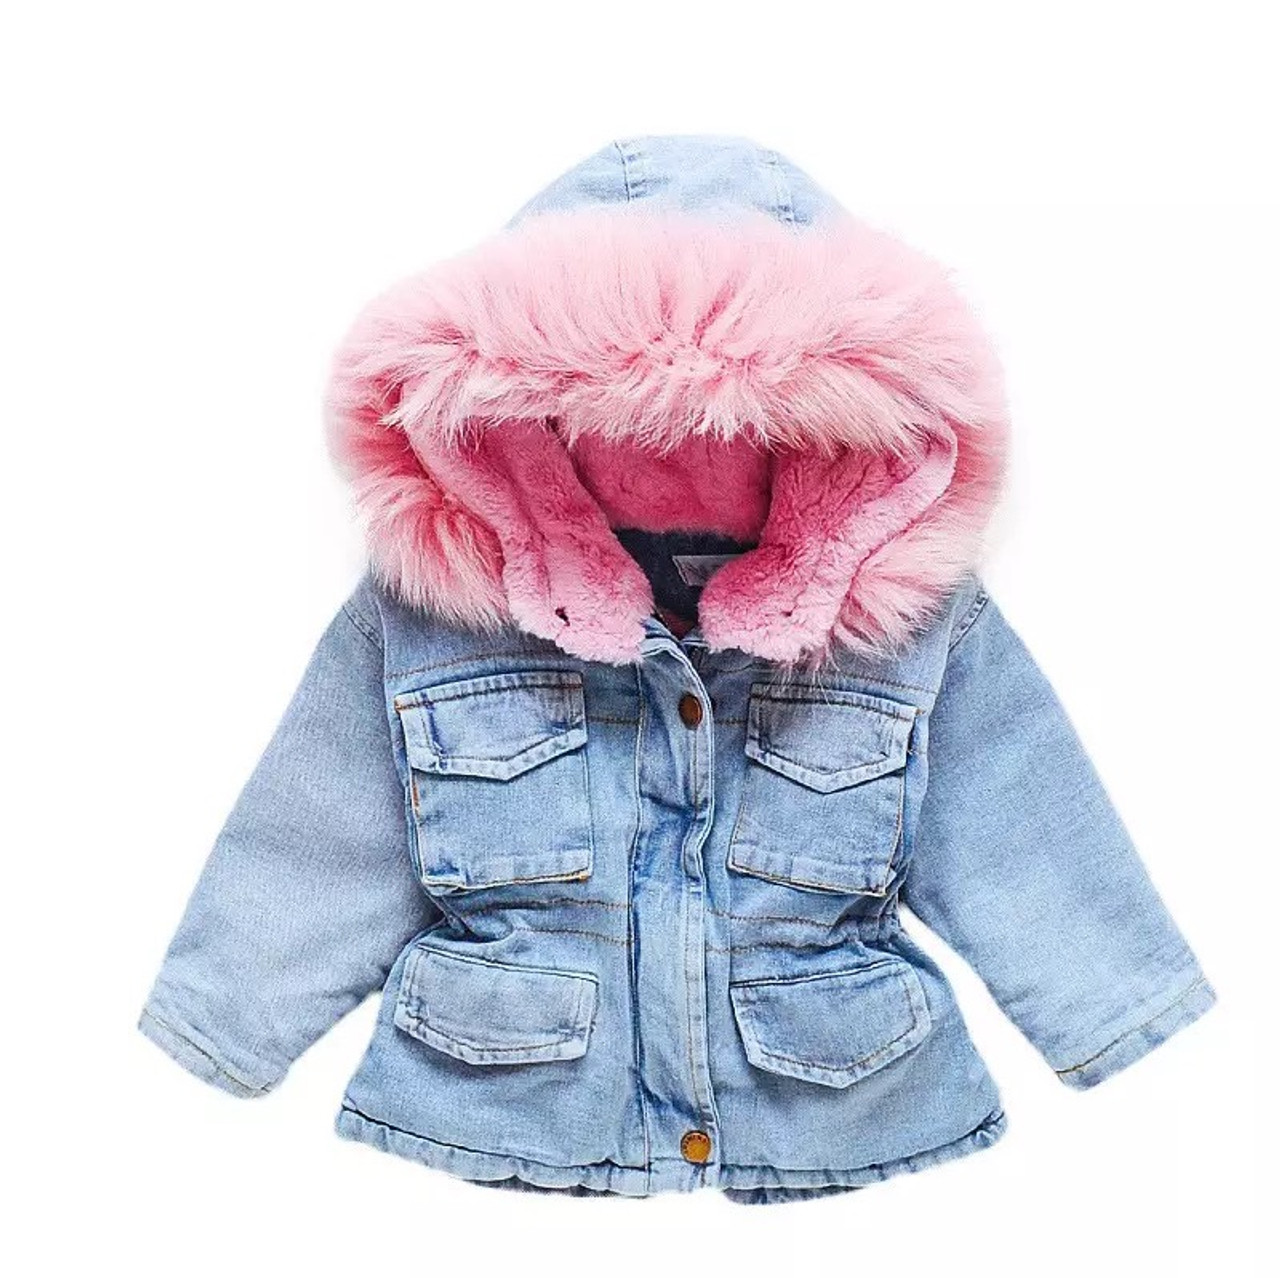 Buy Cute Bear Ears Faux Fur Hooded Winter Coat Online